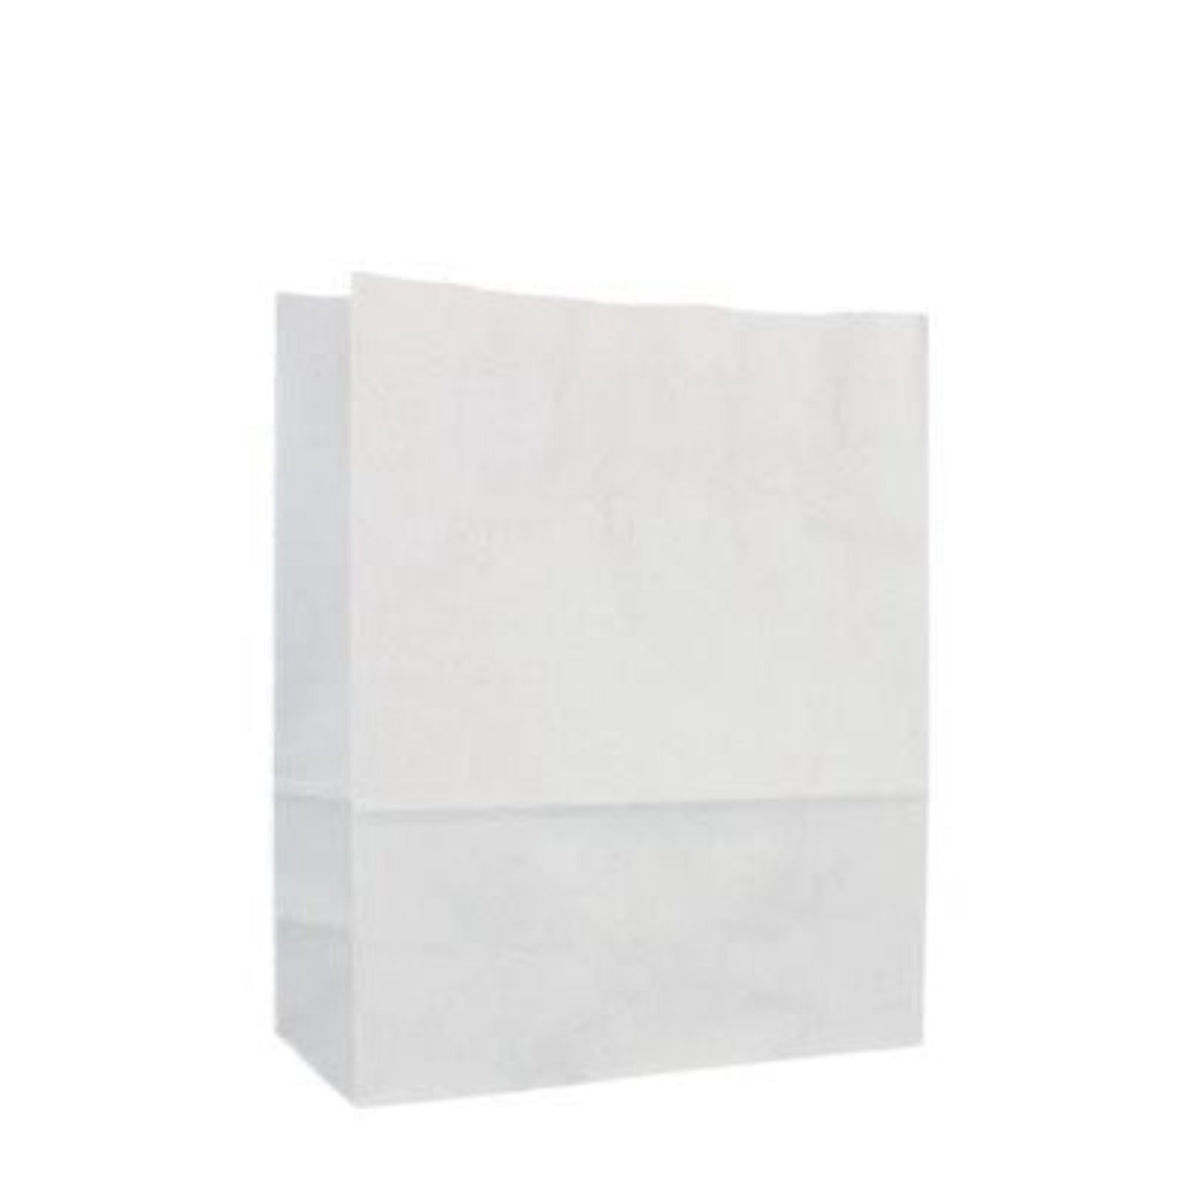 Medium White Grab Bag 100pk